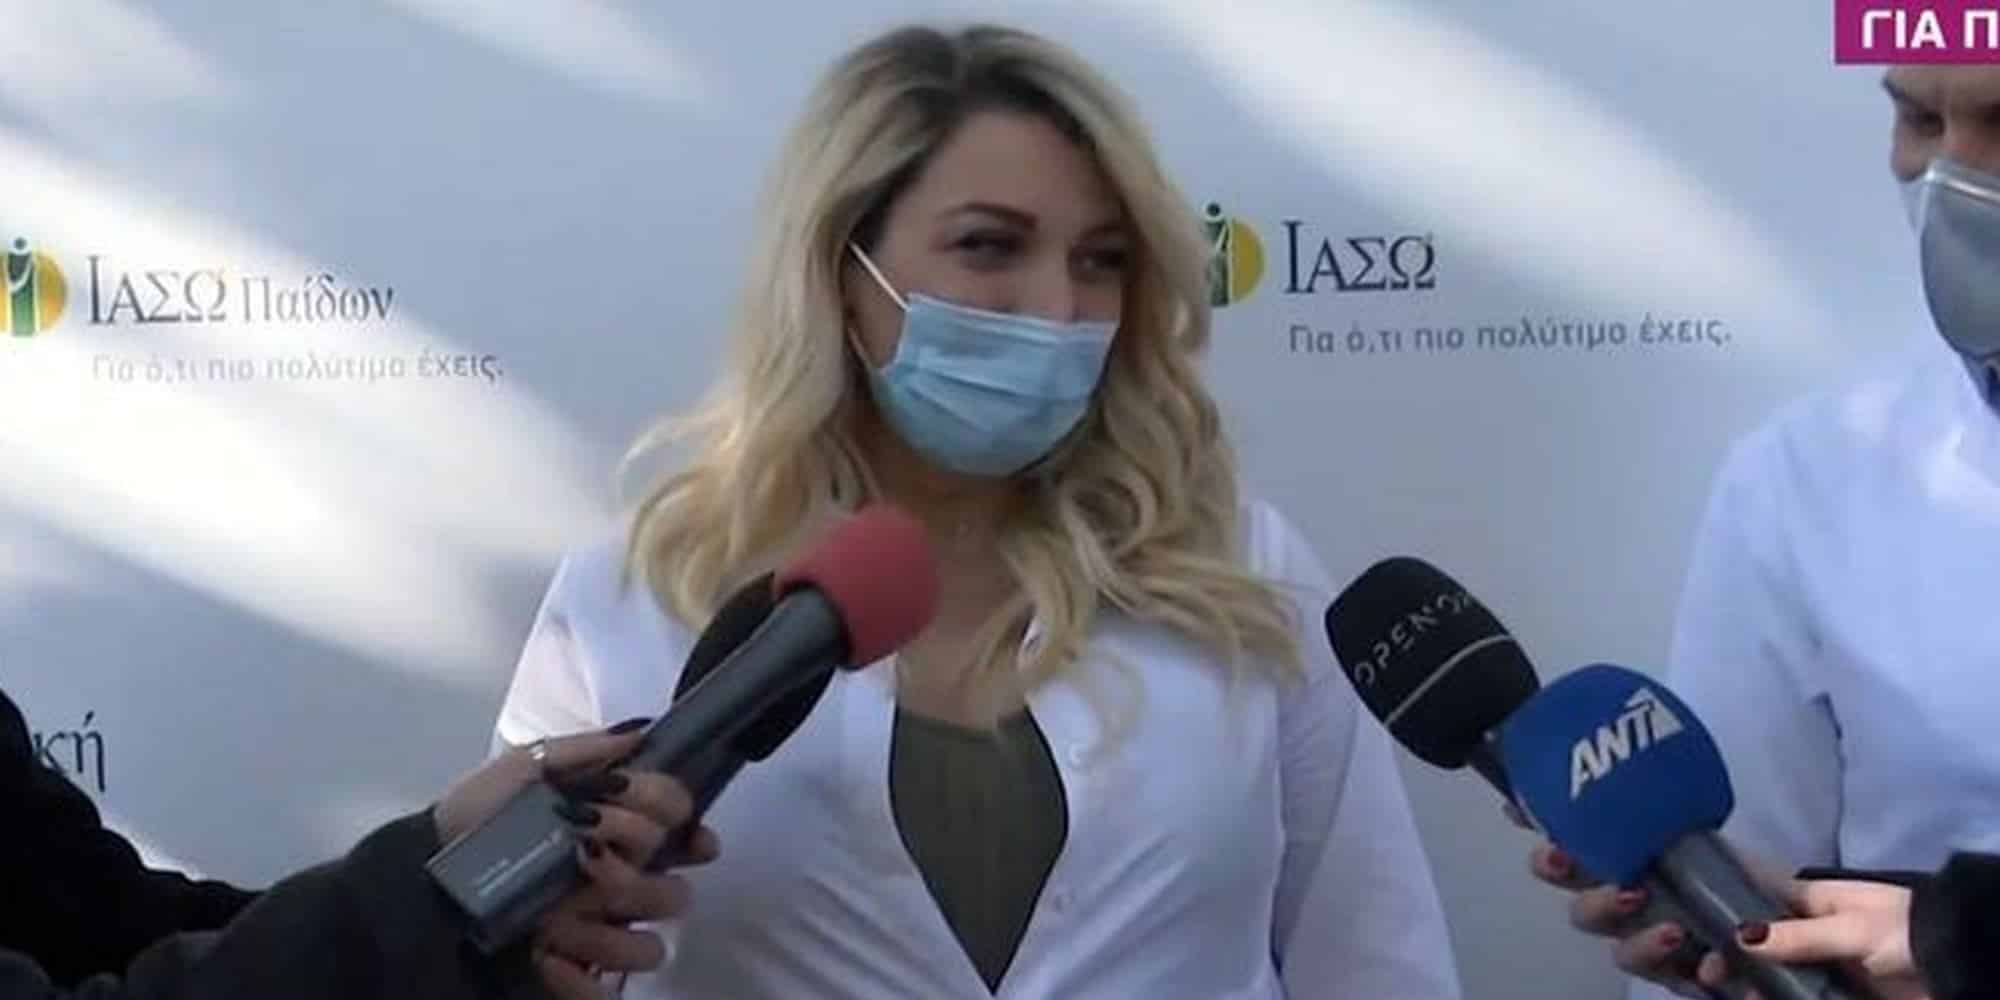 Η Κωνσταντίνα Σπυροπούλου κάνει δηλώσεις κατά την έξοδό της από το μαιευτήριο